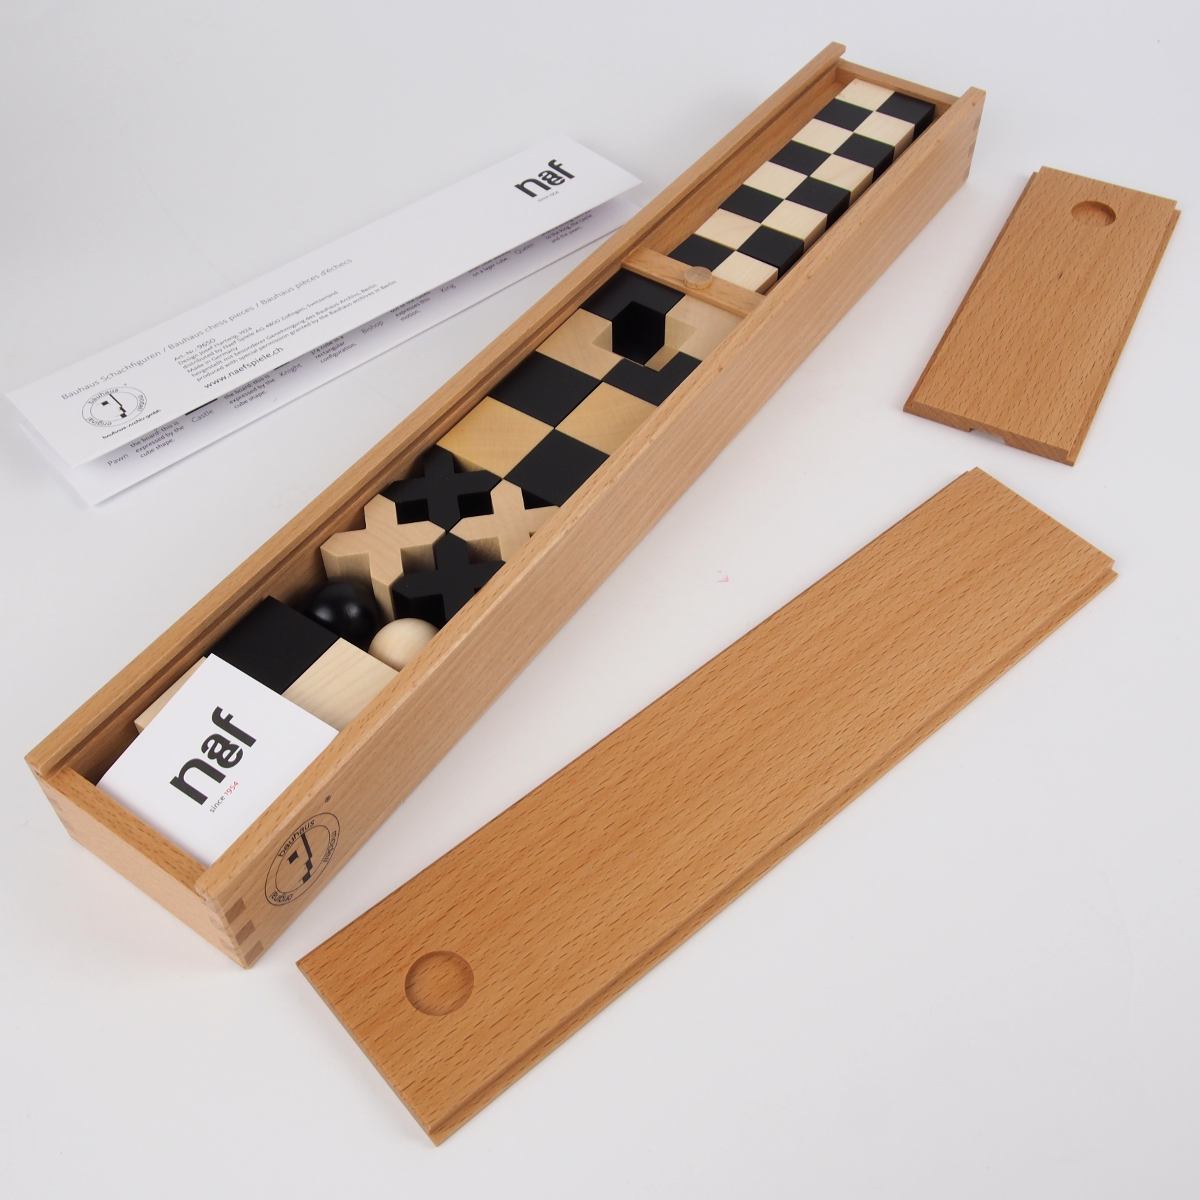 Handmade Bauhaus Chess Game